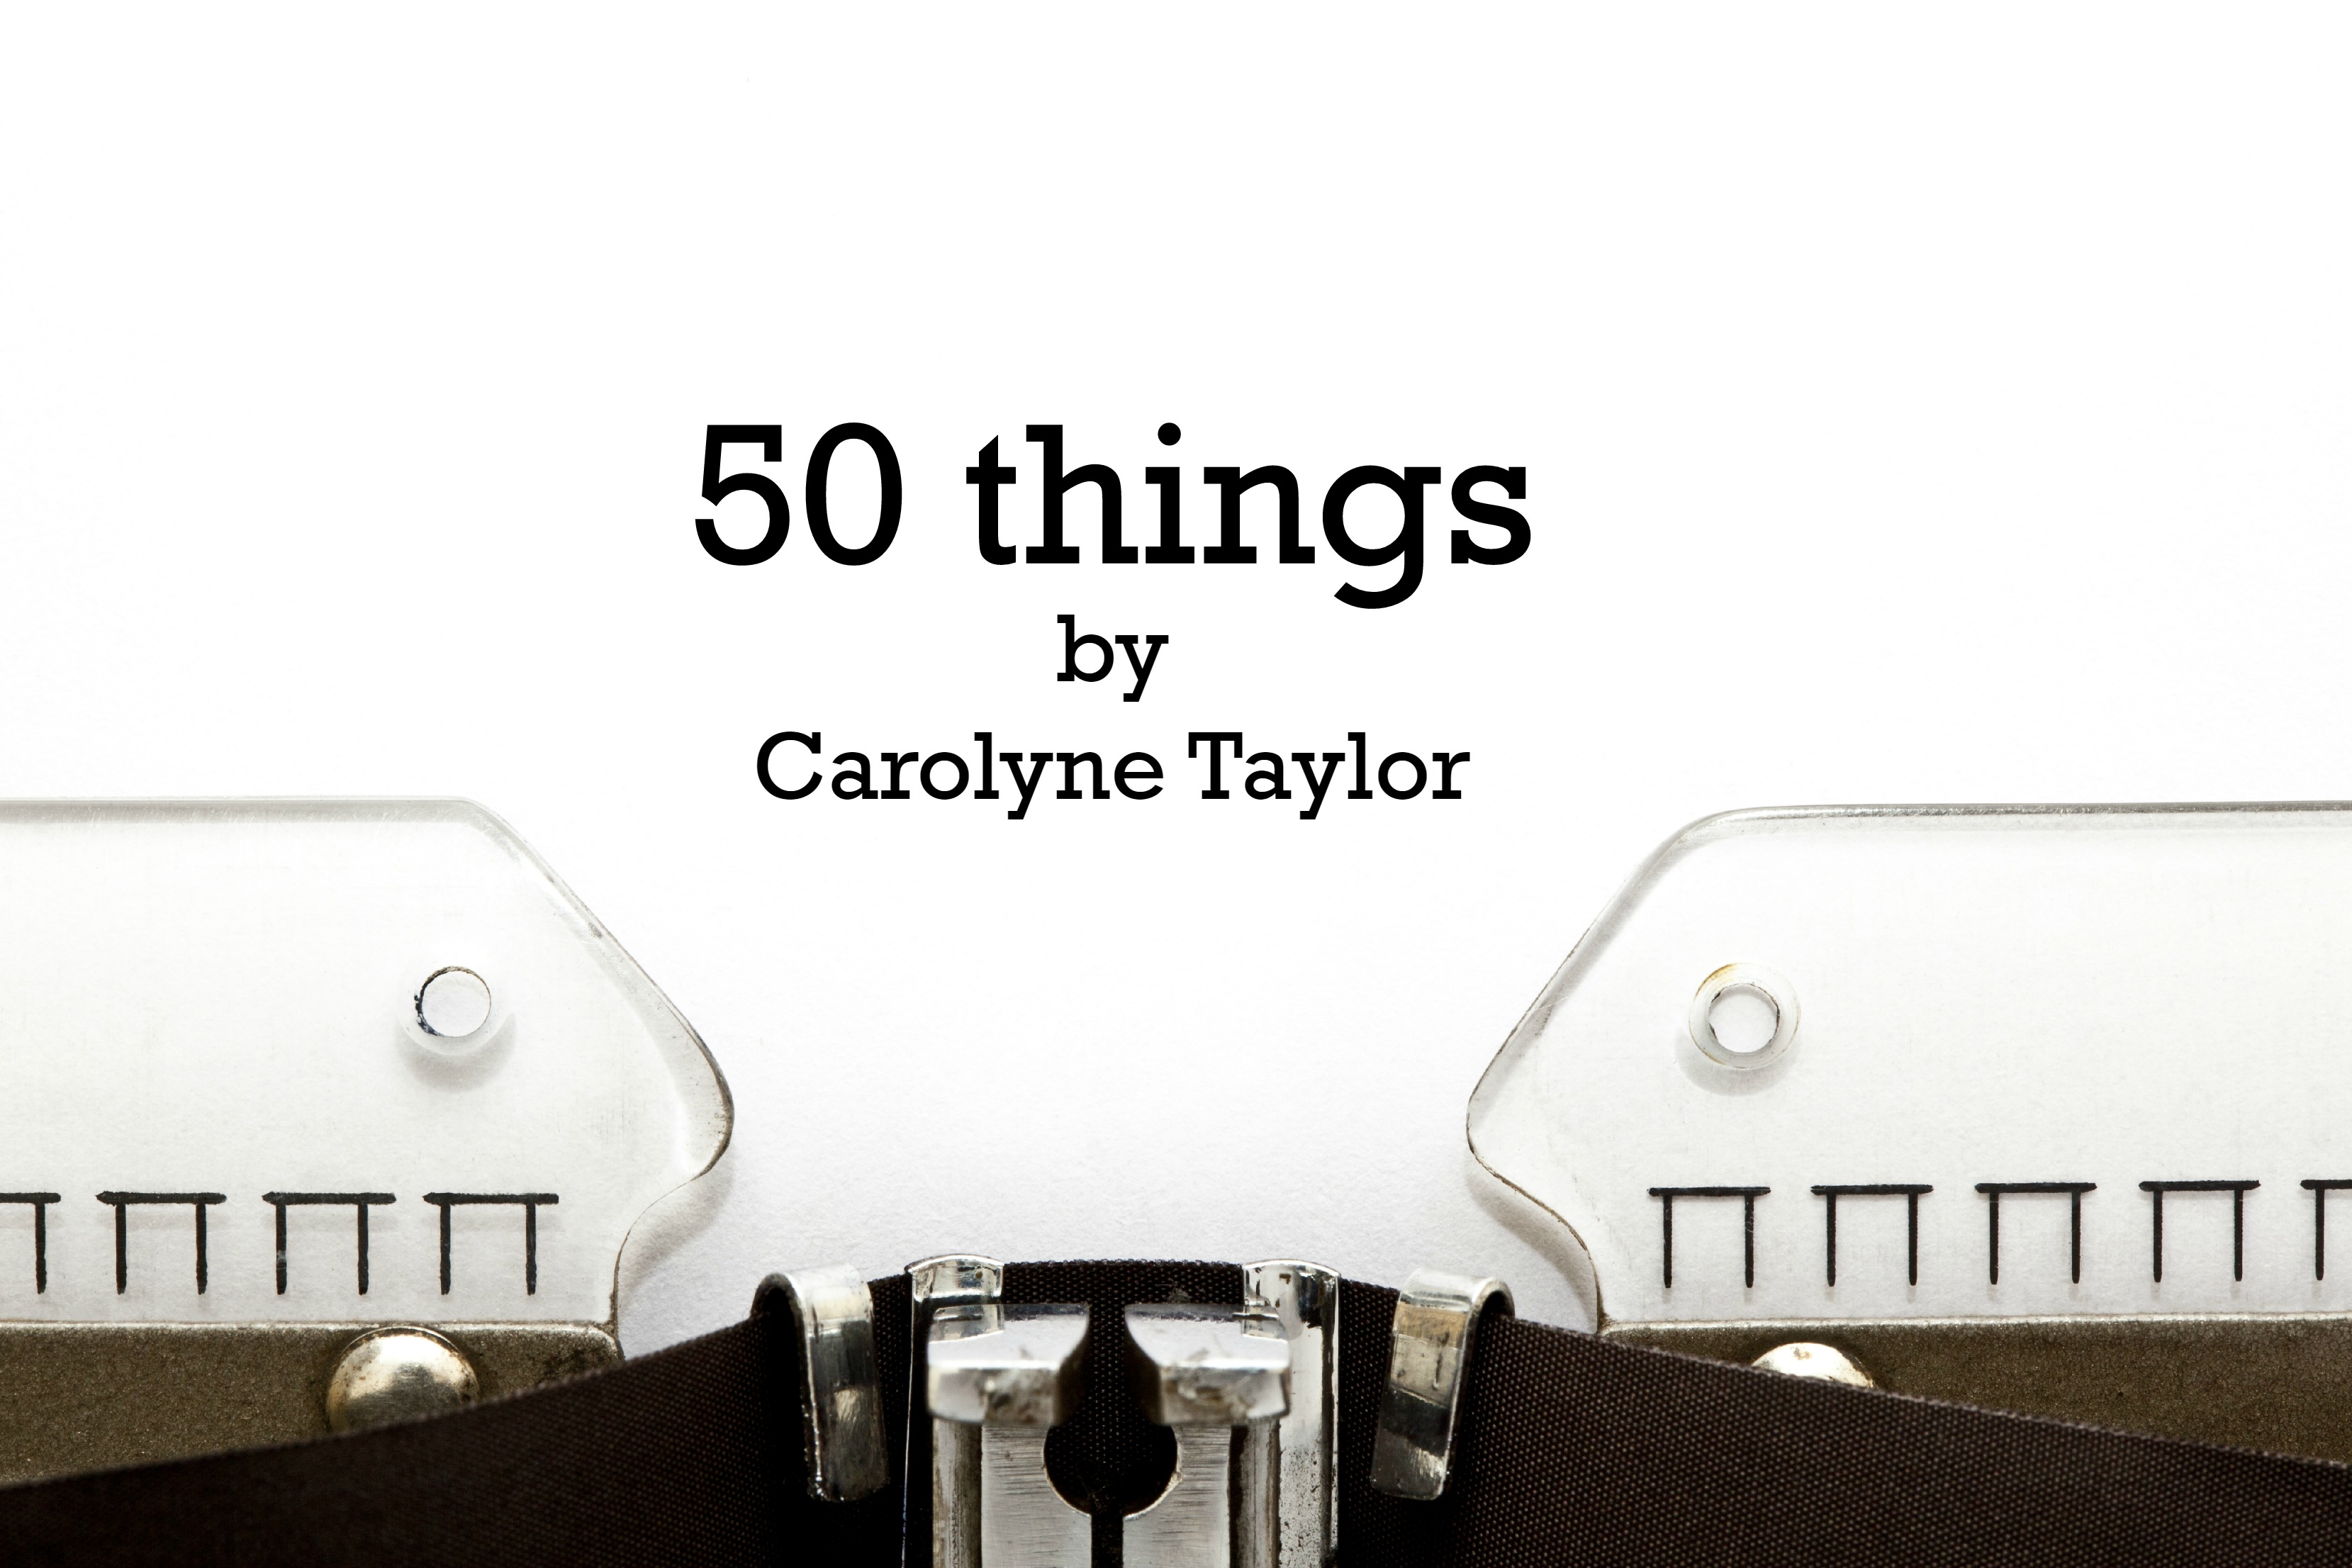 50 Things